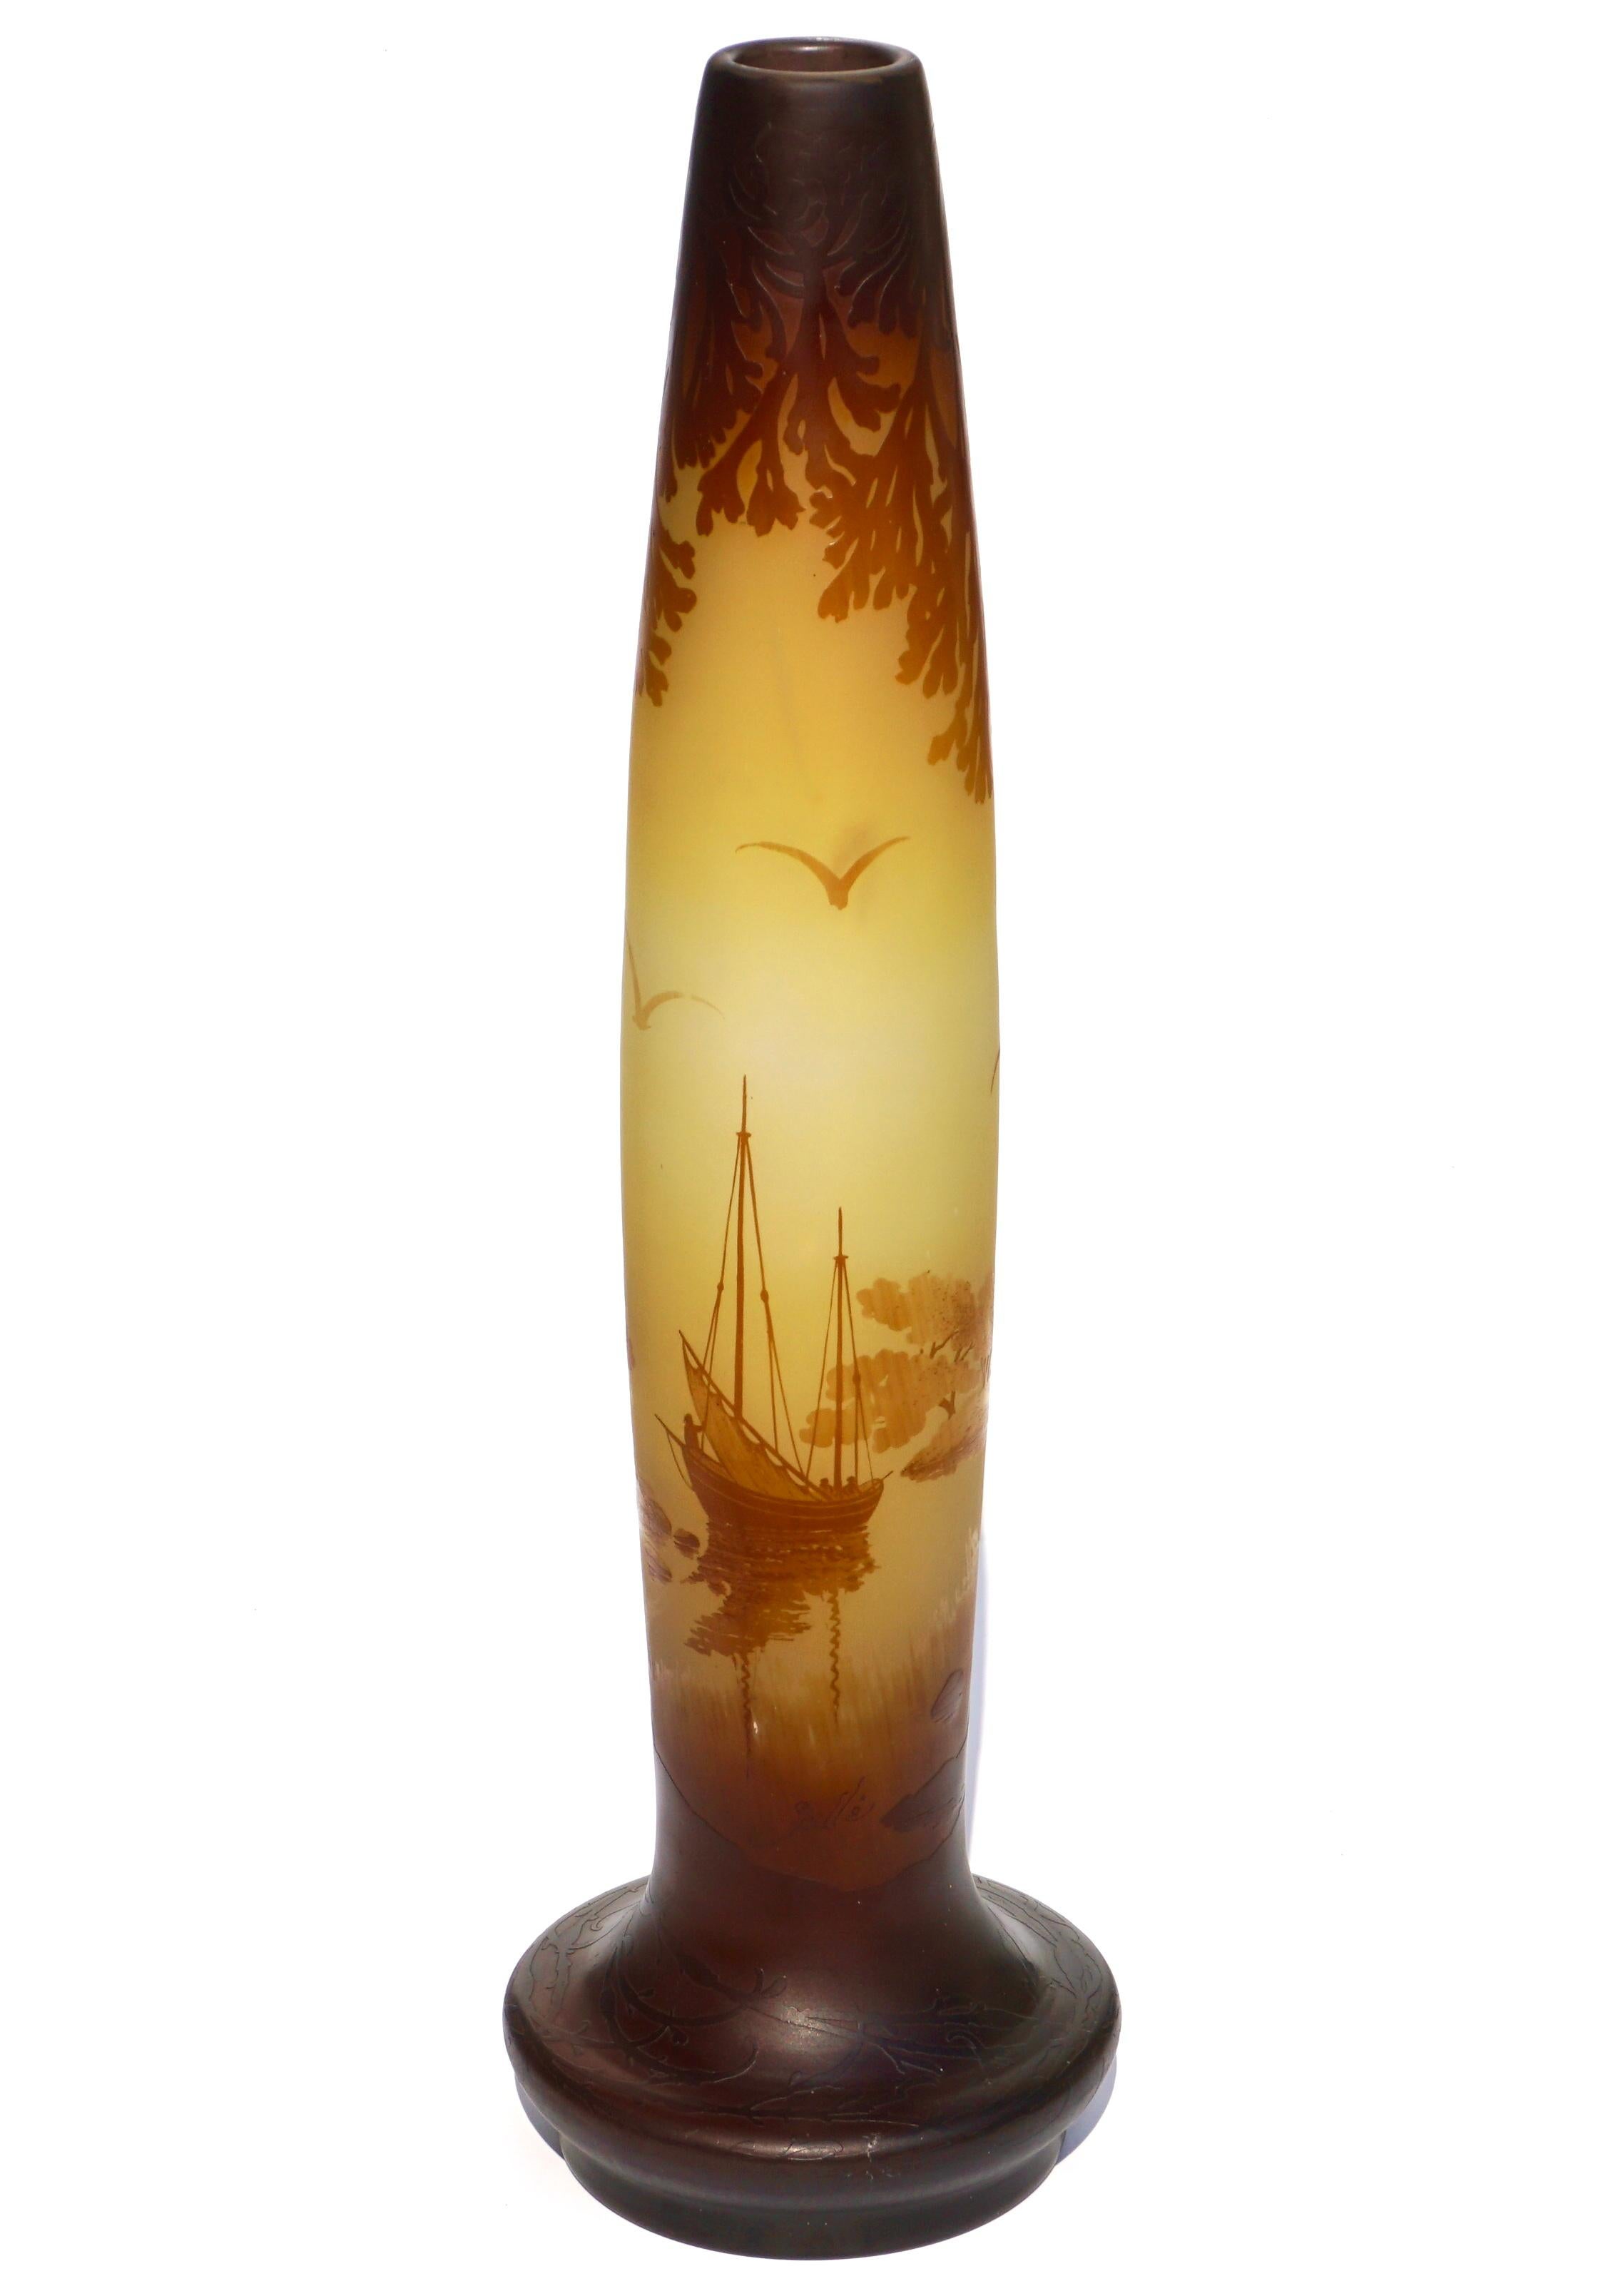 Emile Galle (französisch 1846-1904)

Eine schöne zweifarbige Kamee-Vase mit einem gelben Hintergrund, der eine Seeszene mit Booten, Bäumen und Vögeln zeigt. Der Detailreichtum und die Feinheit der Säureätzung und der Kameenarbeit sind